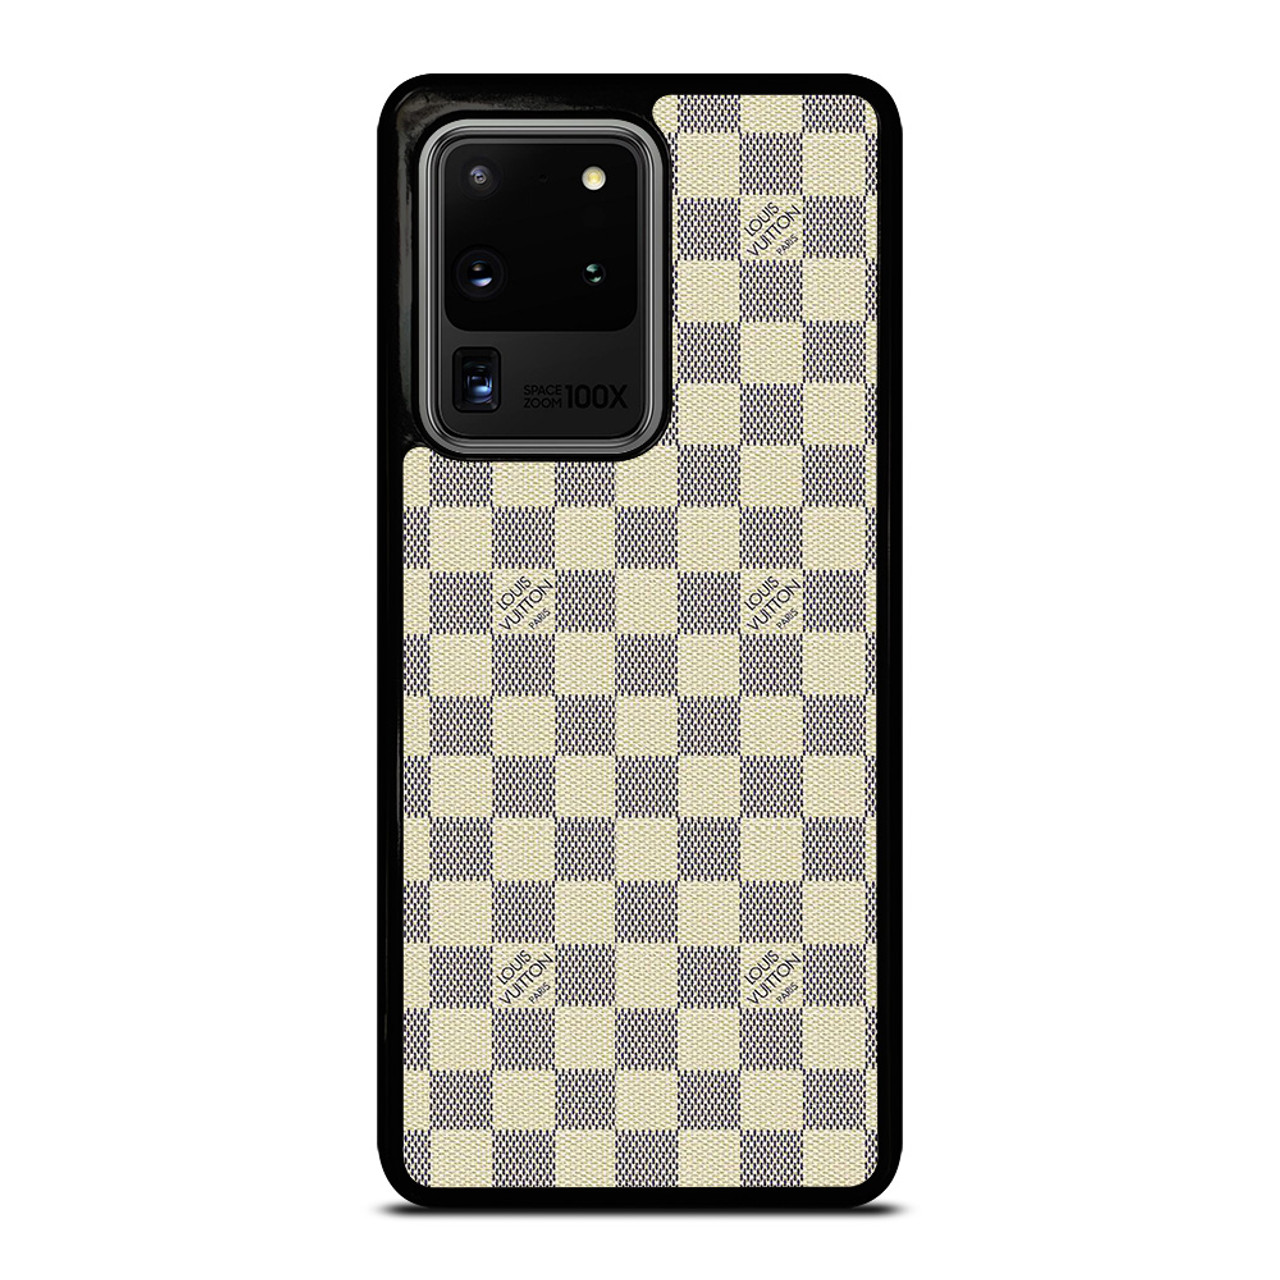 Louis Vuitton Samsung S21 Ultra Case LV S21 Case